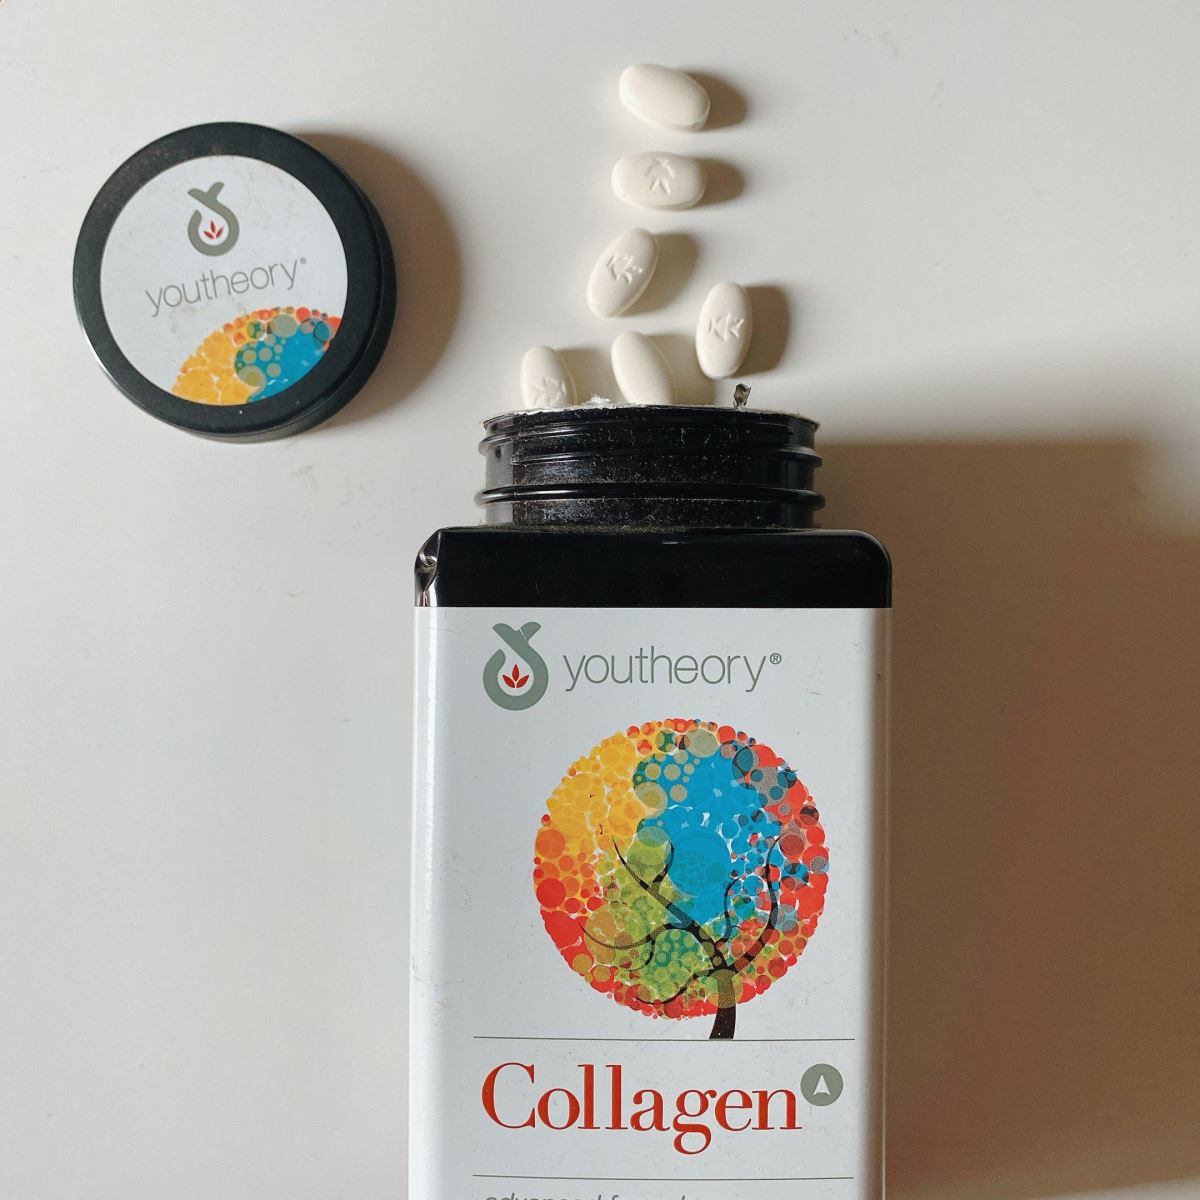 Bật mí cách uống collagen Mỹ Youtheory 390 chống lão hóa hiệu quả